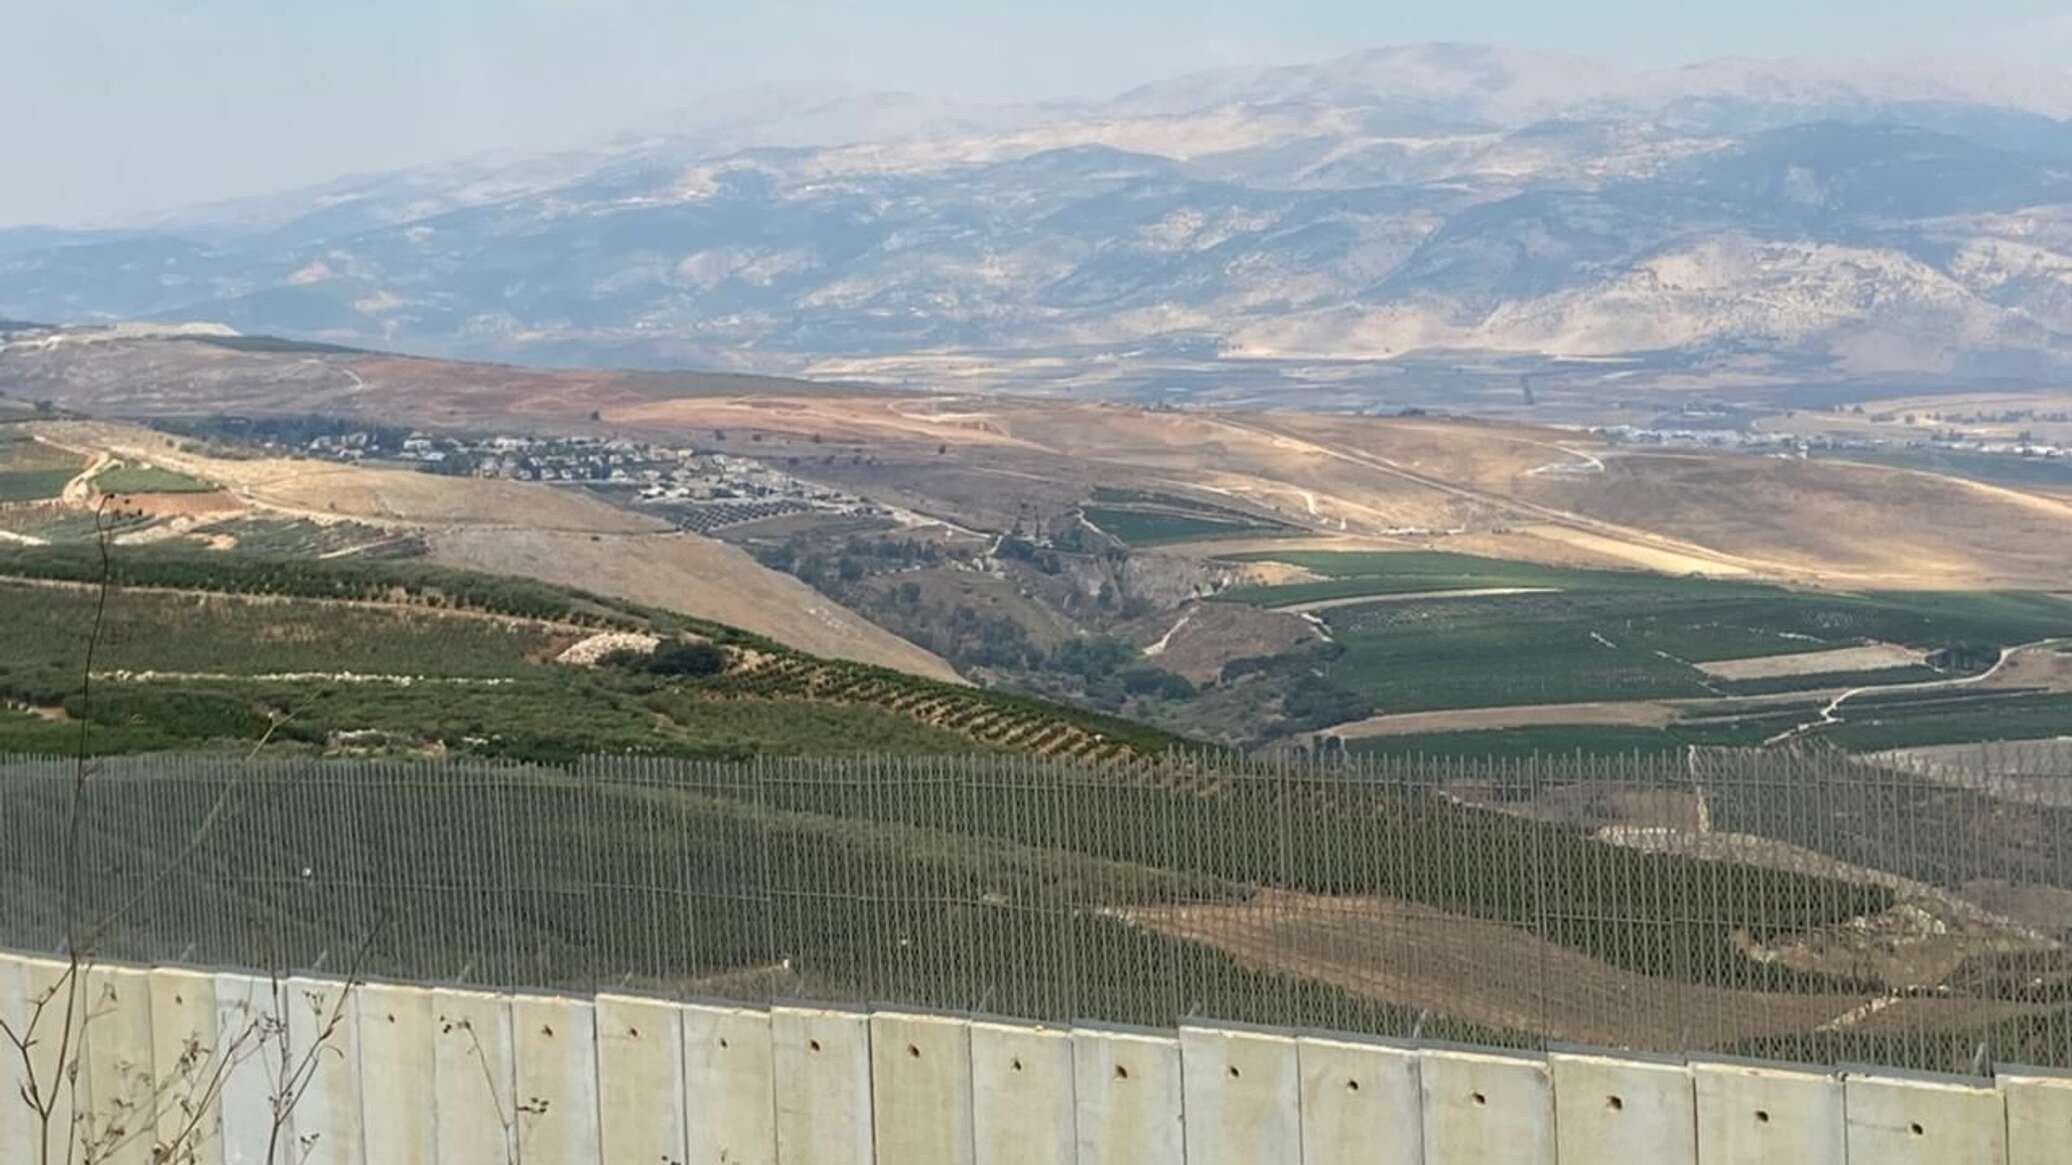 الجيش الإسرائيلي يهاجم بنى تحتية لـ"حزب الله" في لبنان ويسقط طائرة دون طيار